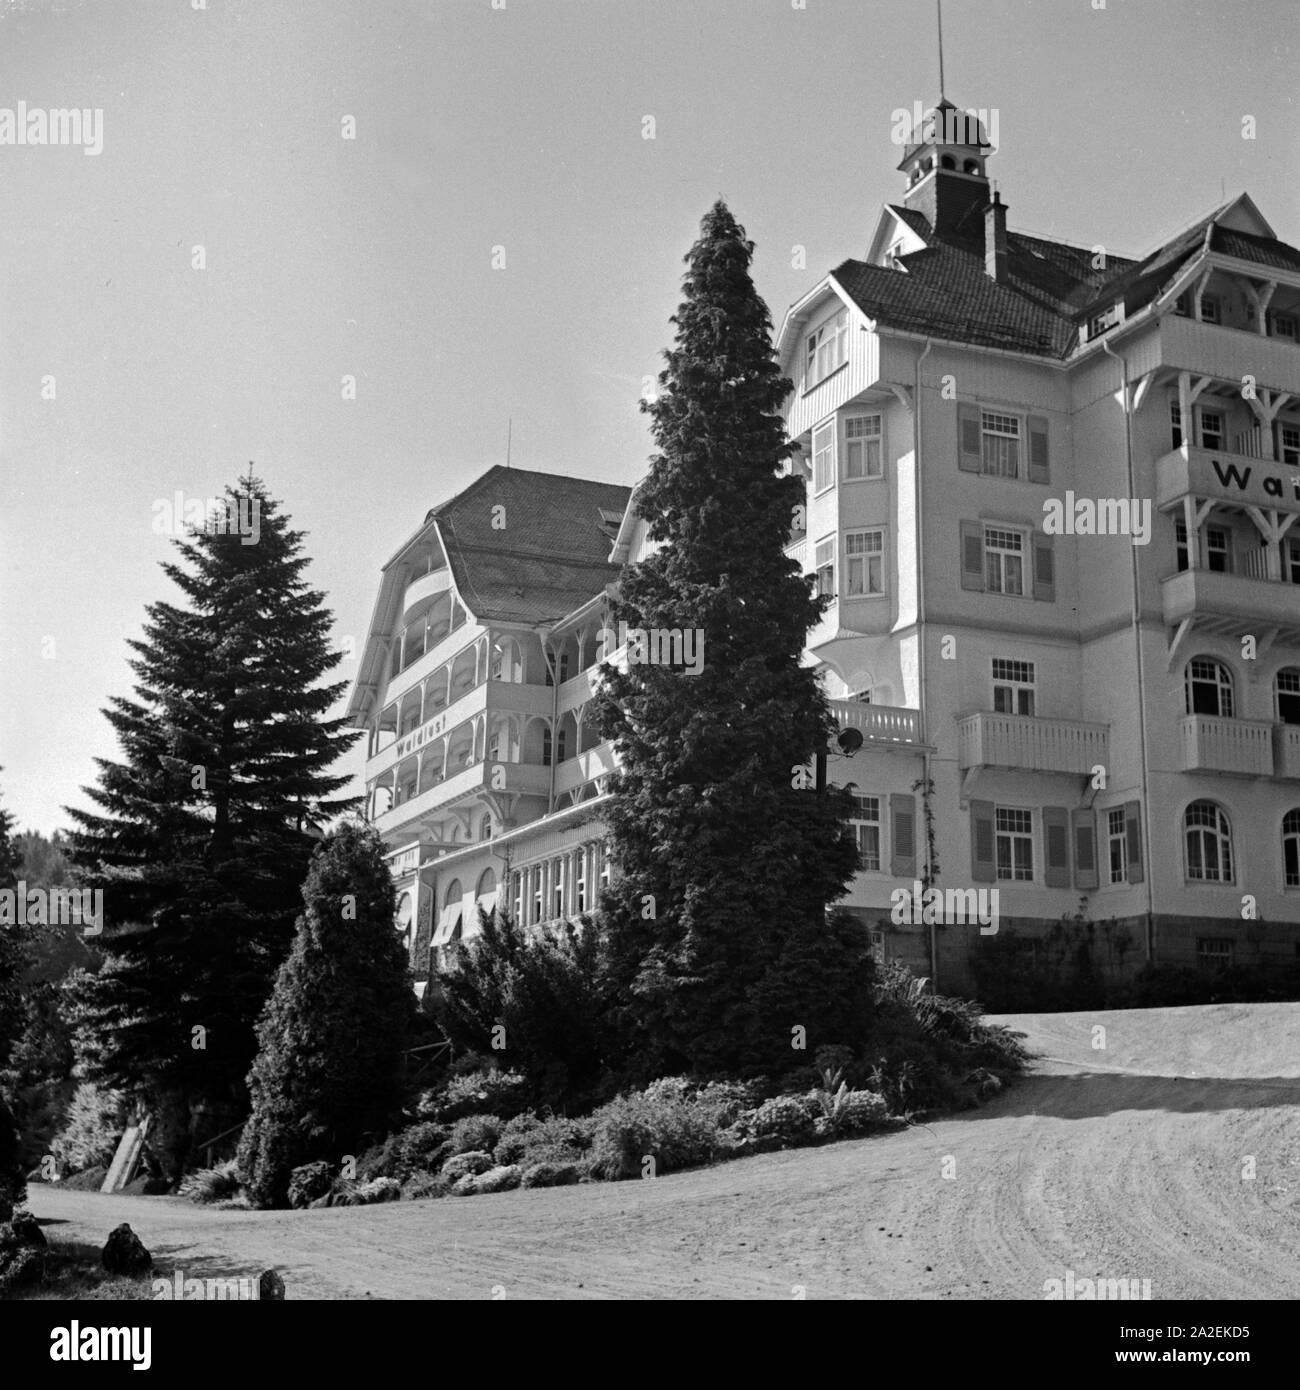 Das Hotel Waldlust in Freudenstadt im Schwarzwald, Deutschland 1930er Jahre. Hotel "waldlust" in Freudenstadt im Schwarzwald, Deutschland der 1930er Jahre. Stockfoto